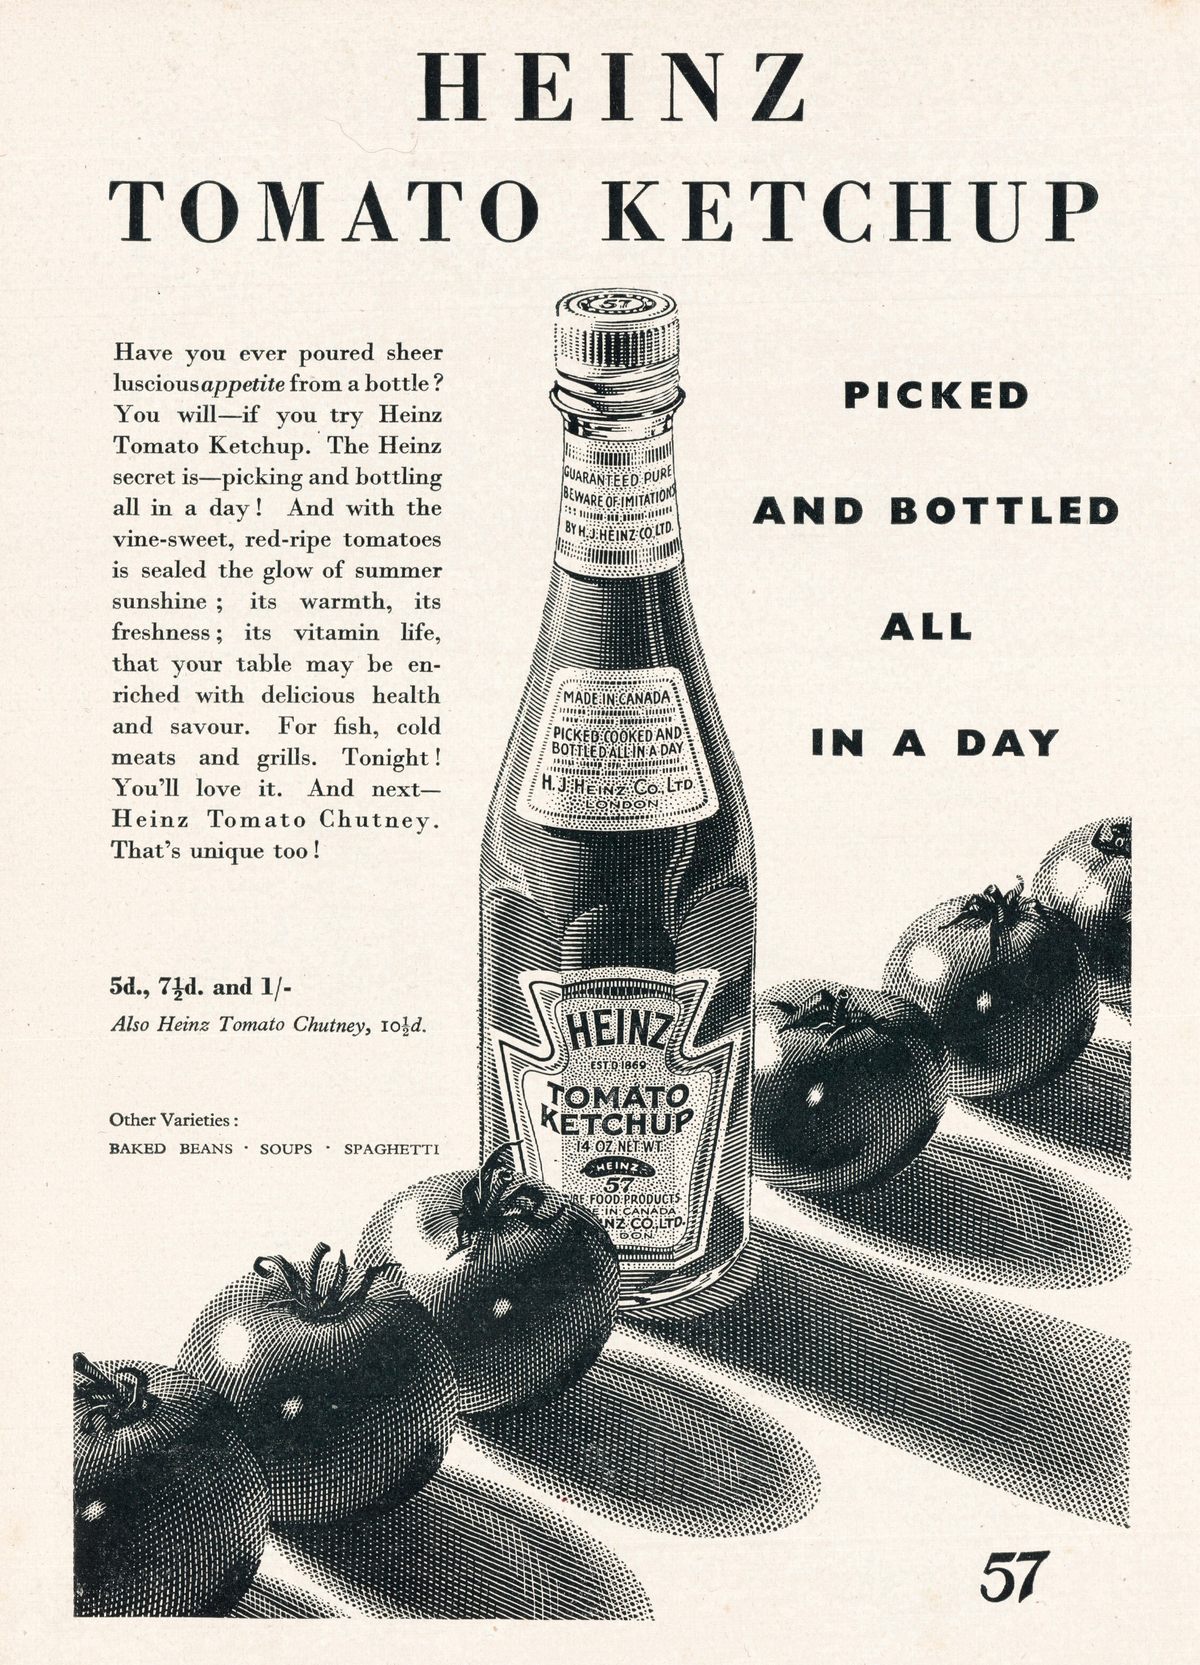 A Heinz advertisement from 1938.